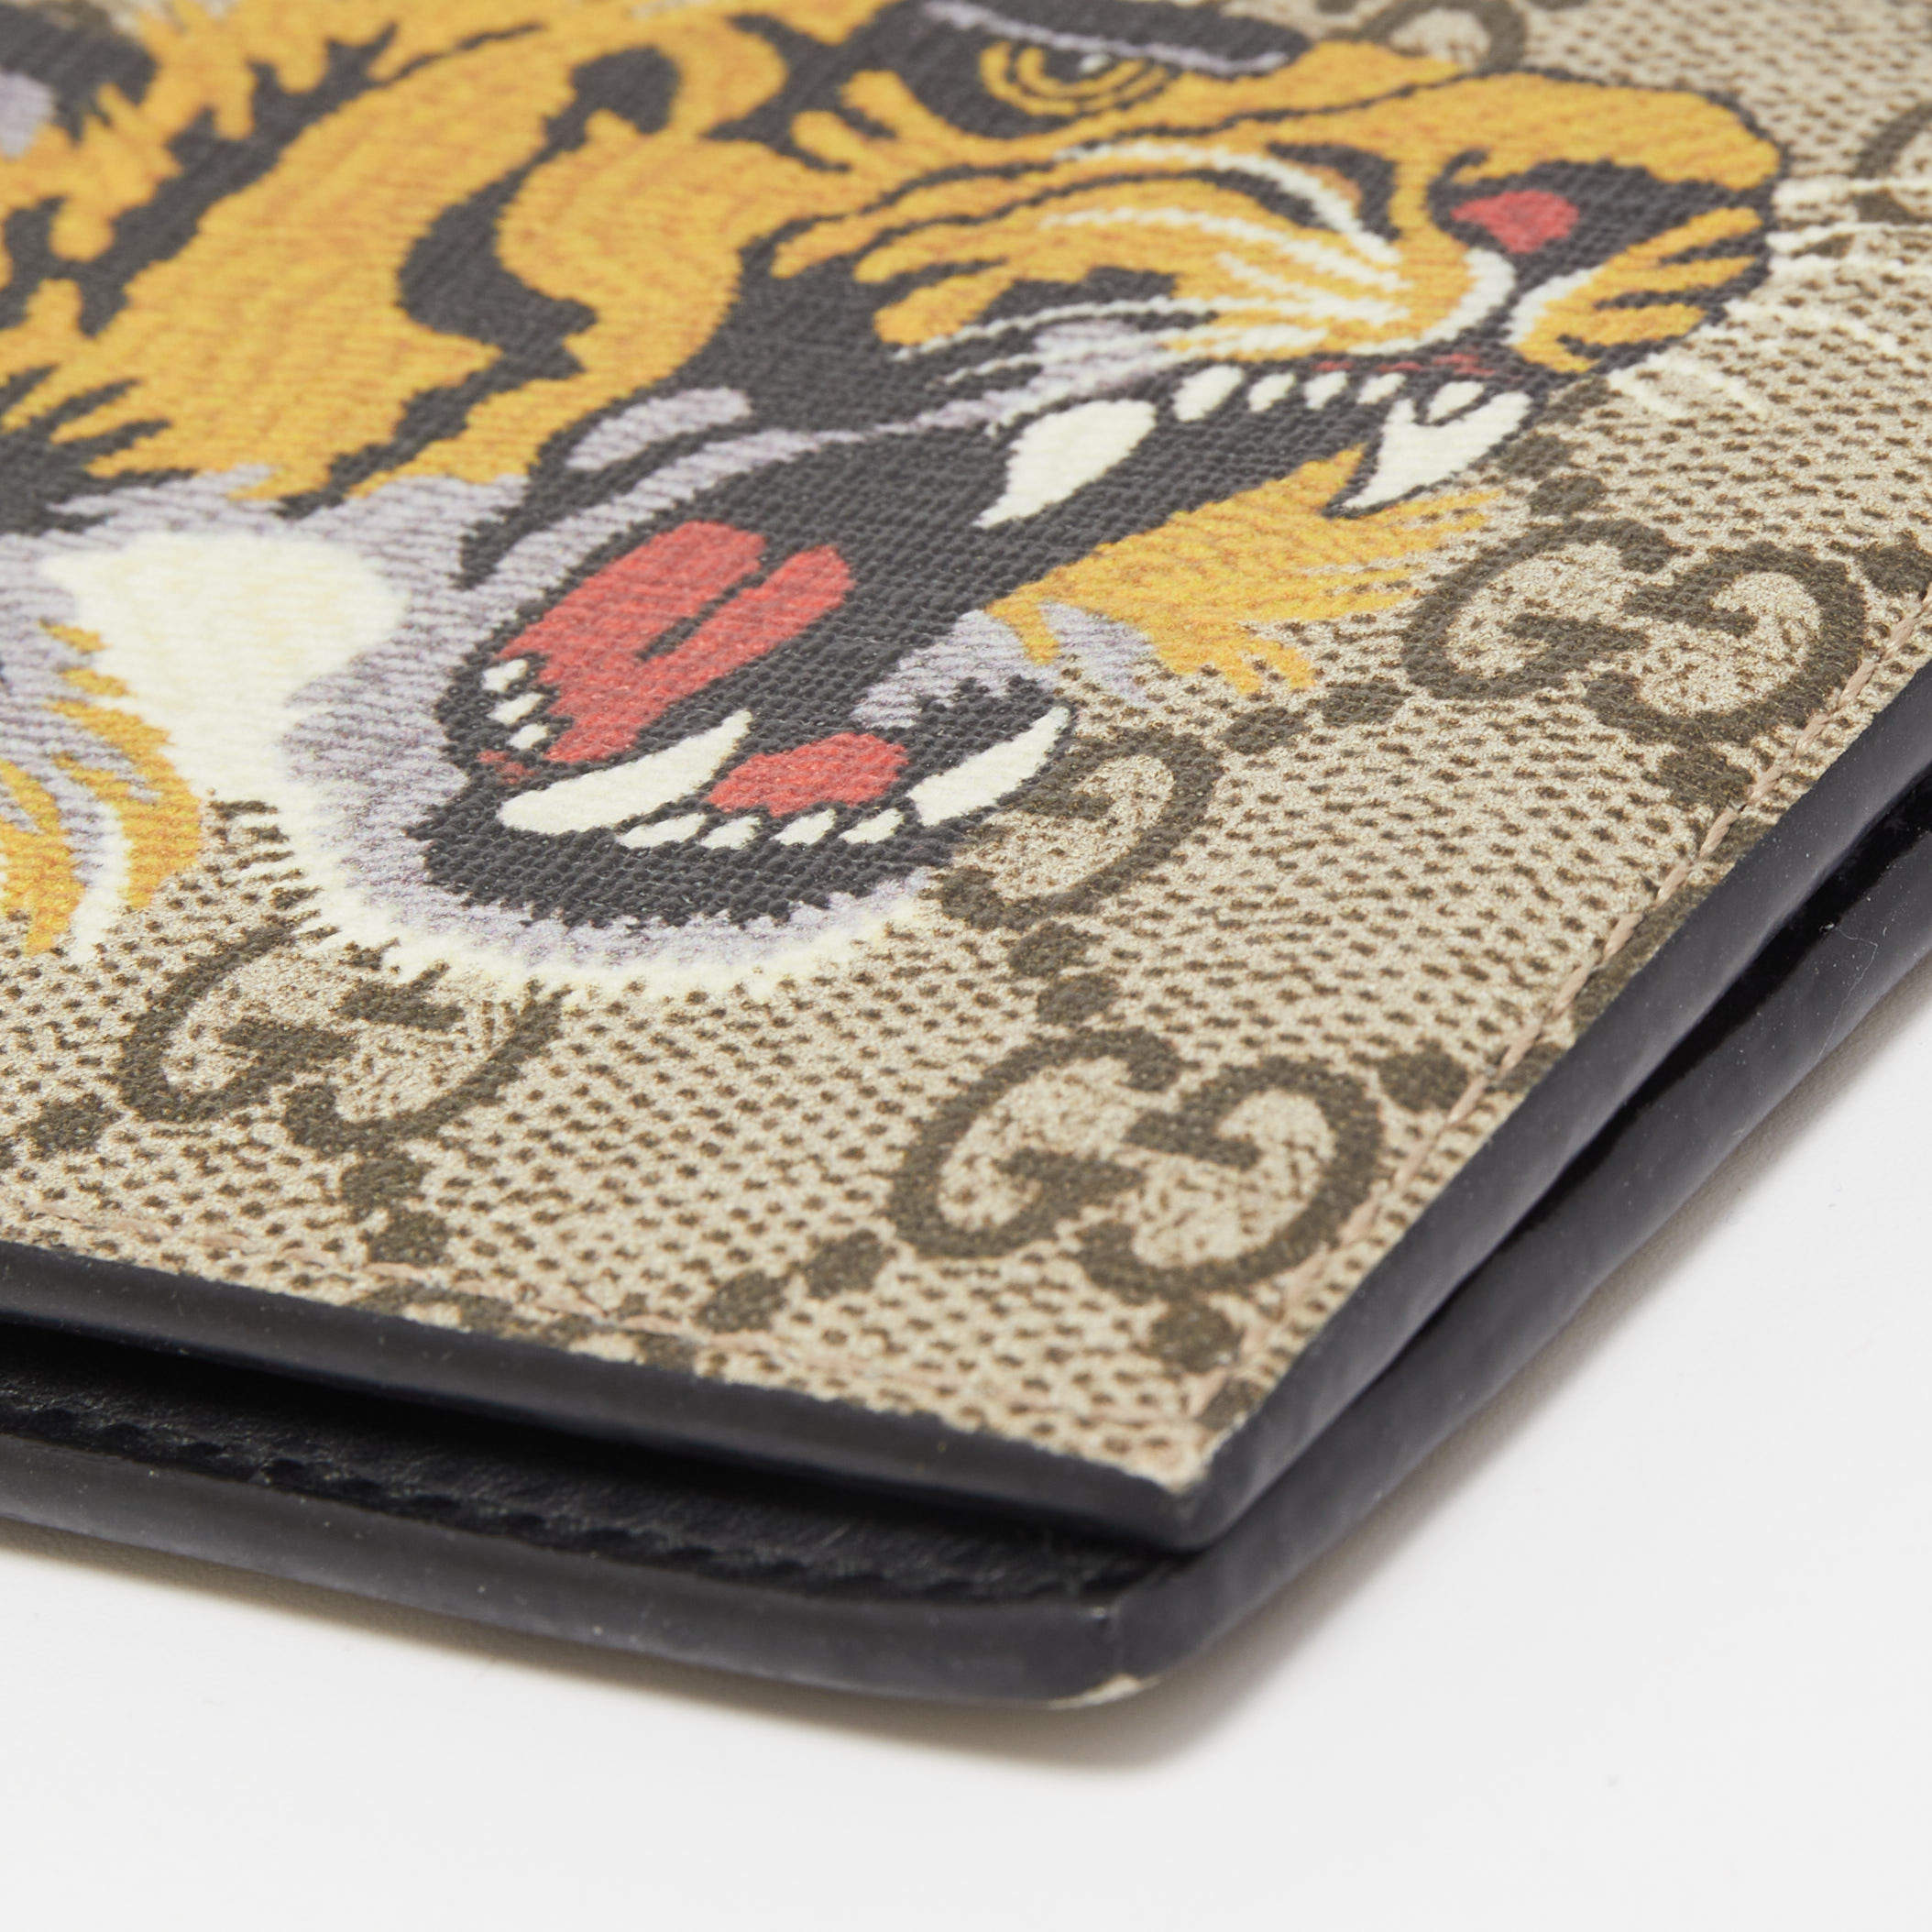 Gucci Men's GG Supreme Tiger-Print Wallet